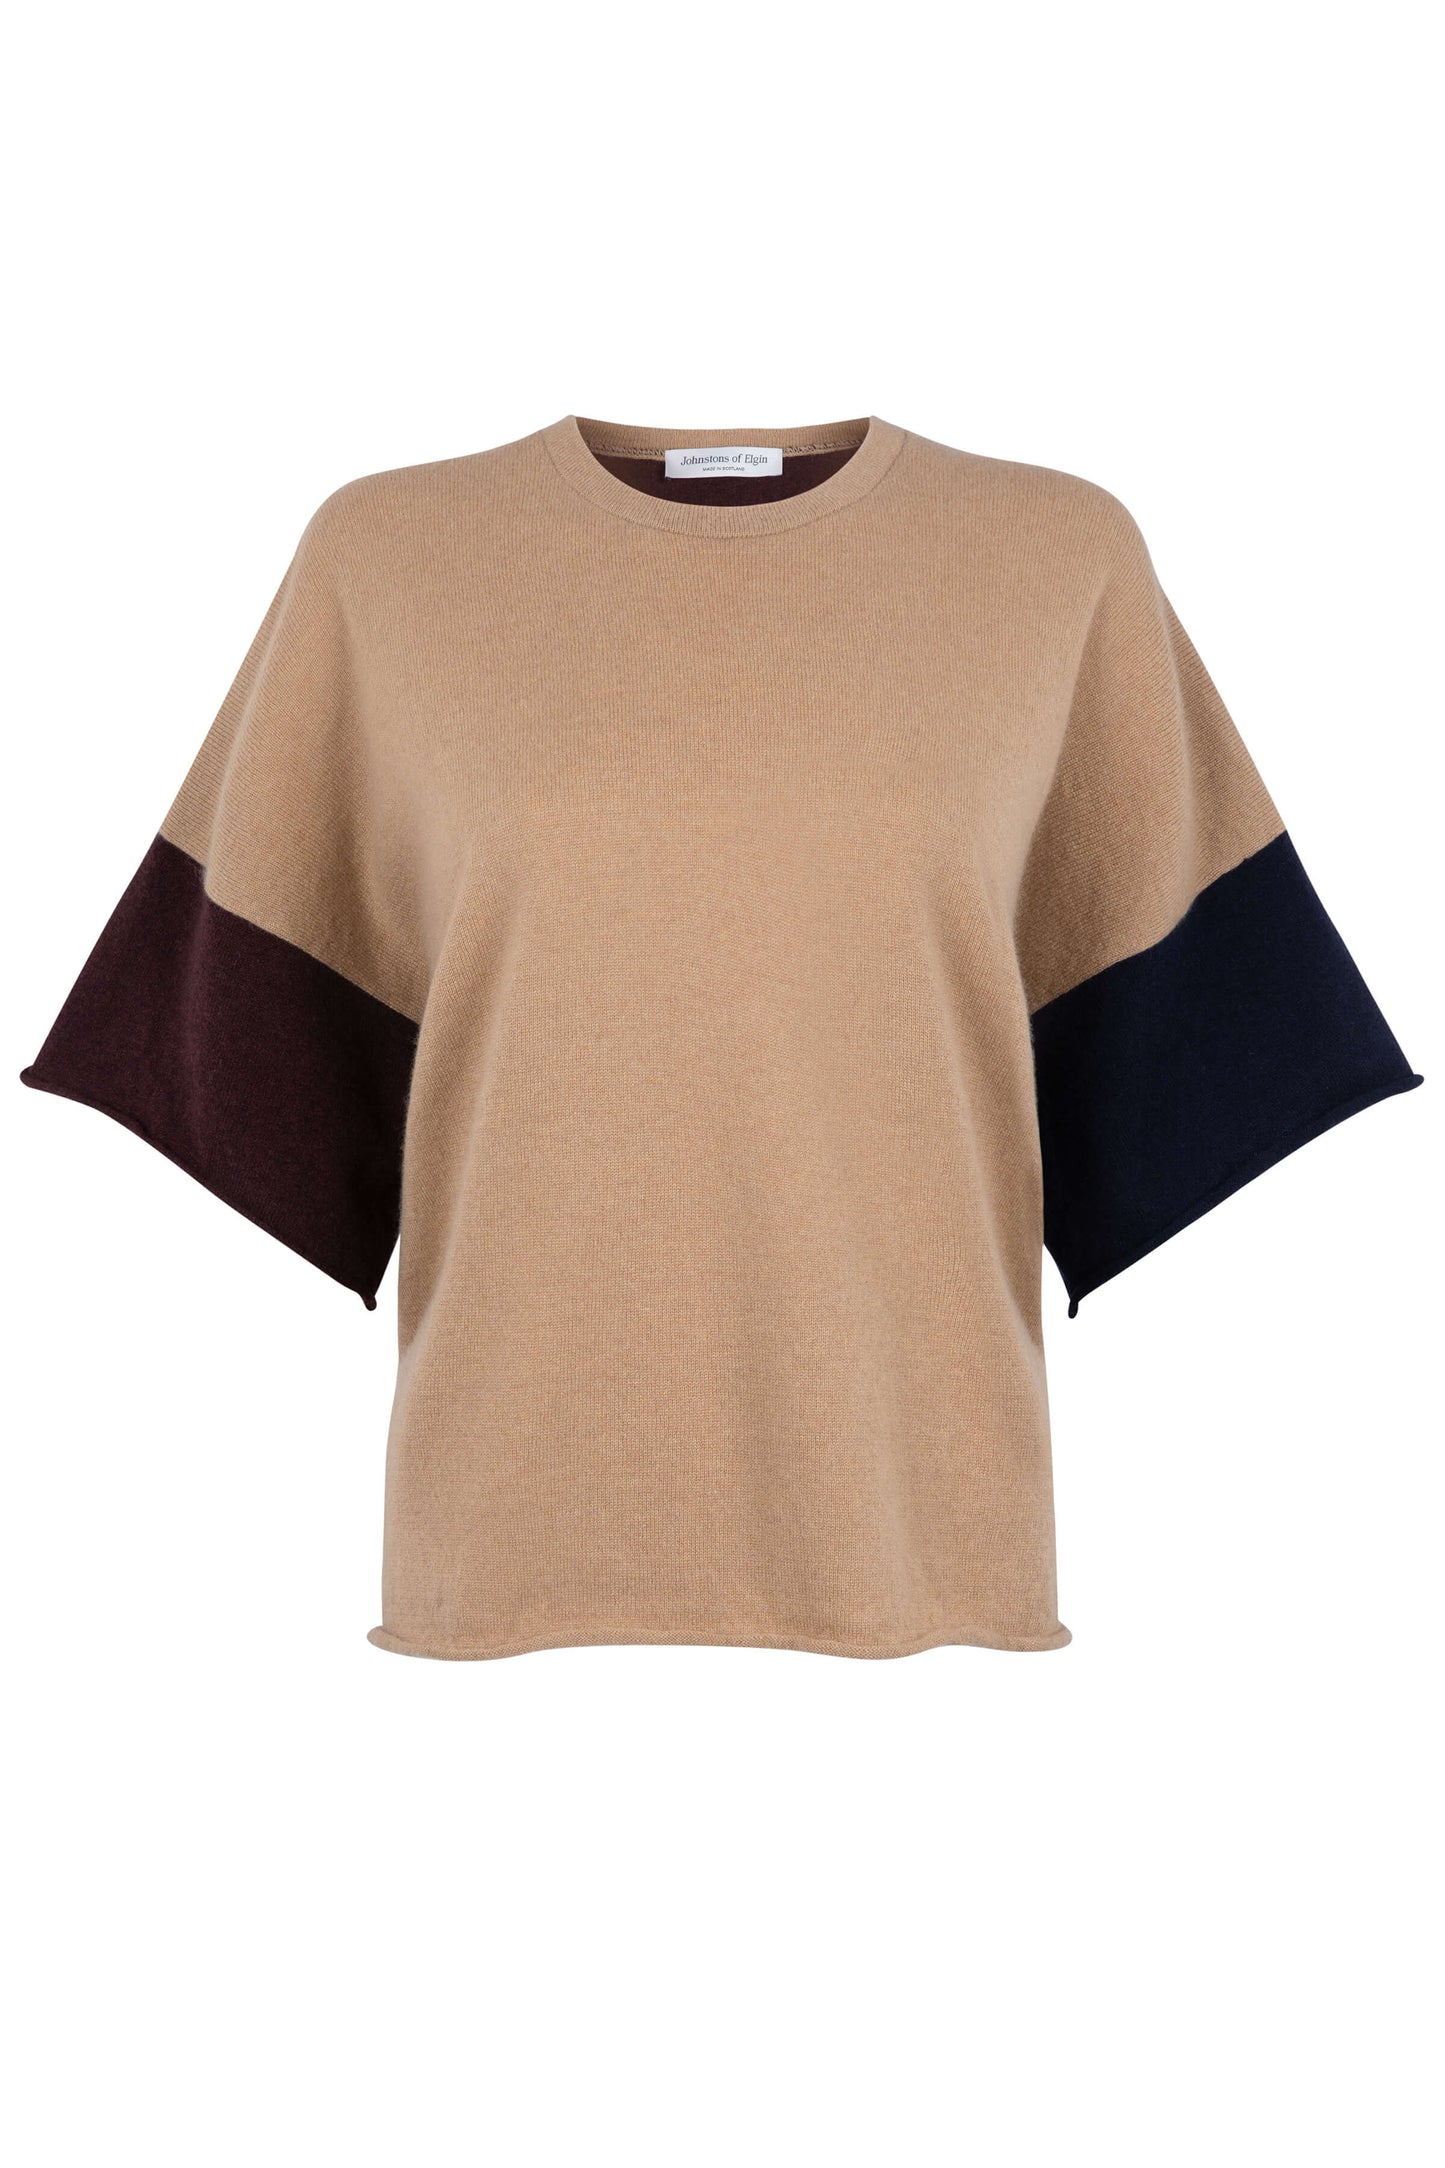 Johnstons of Elgin SS24 Women's Knitwear Camel, Dark Navy & Malt Colour Block Cashmere T-Shirt KAP05200Q24278